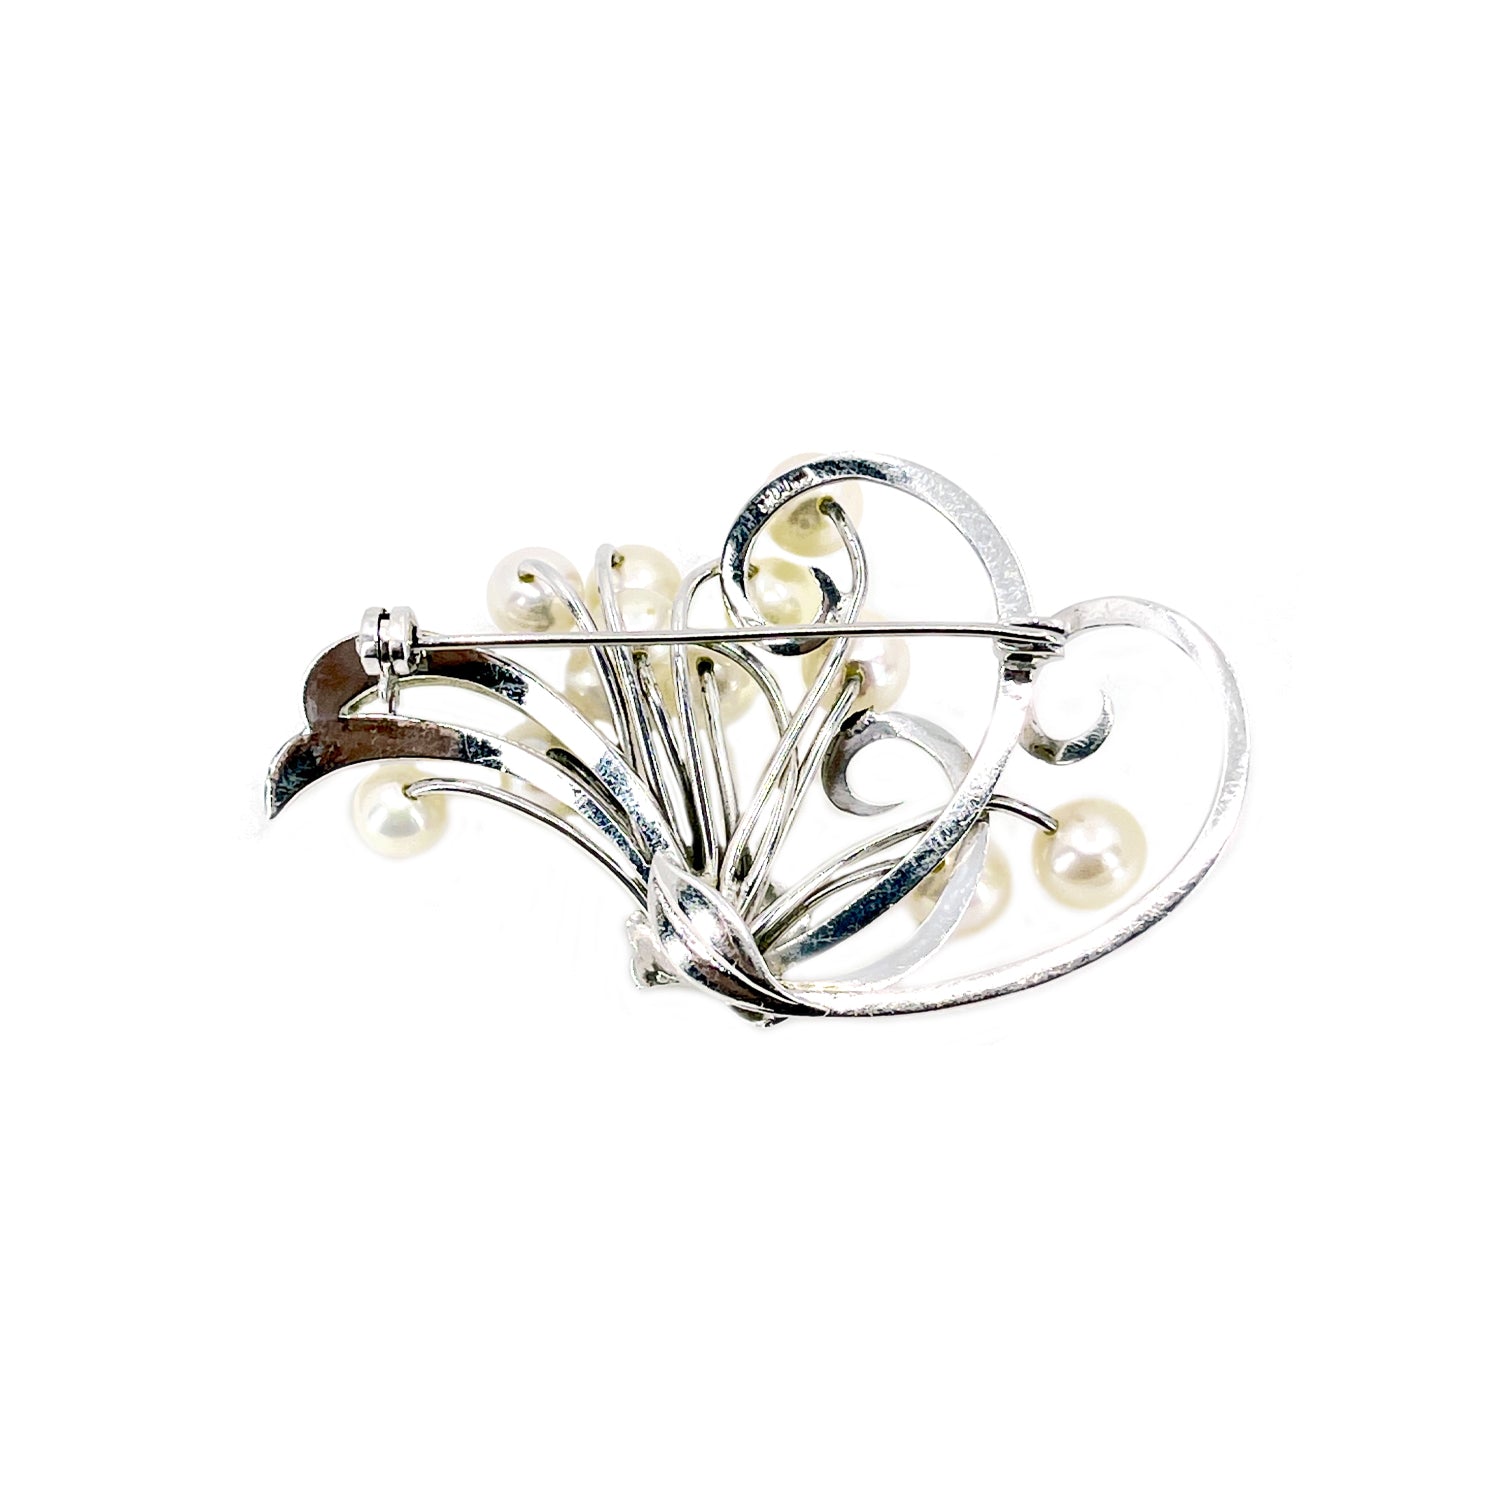 Nouveau Engraved Leaf Japanese Saltwater Akoya Cultured Vintage Cluster Pearl Brooch- Sterling Silver